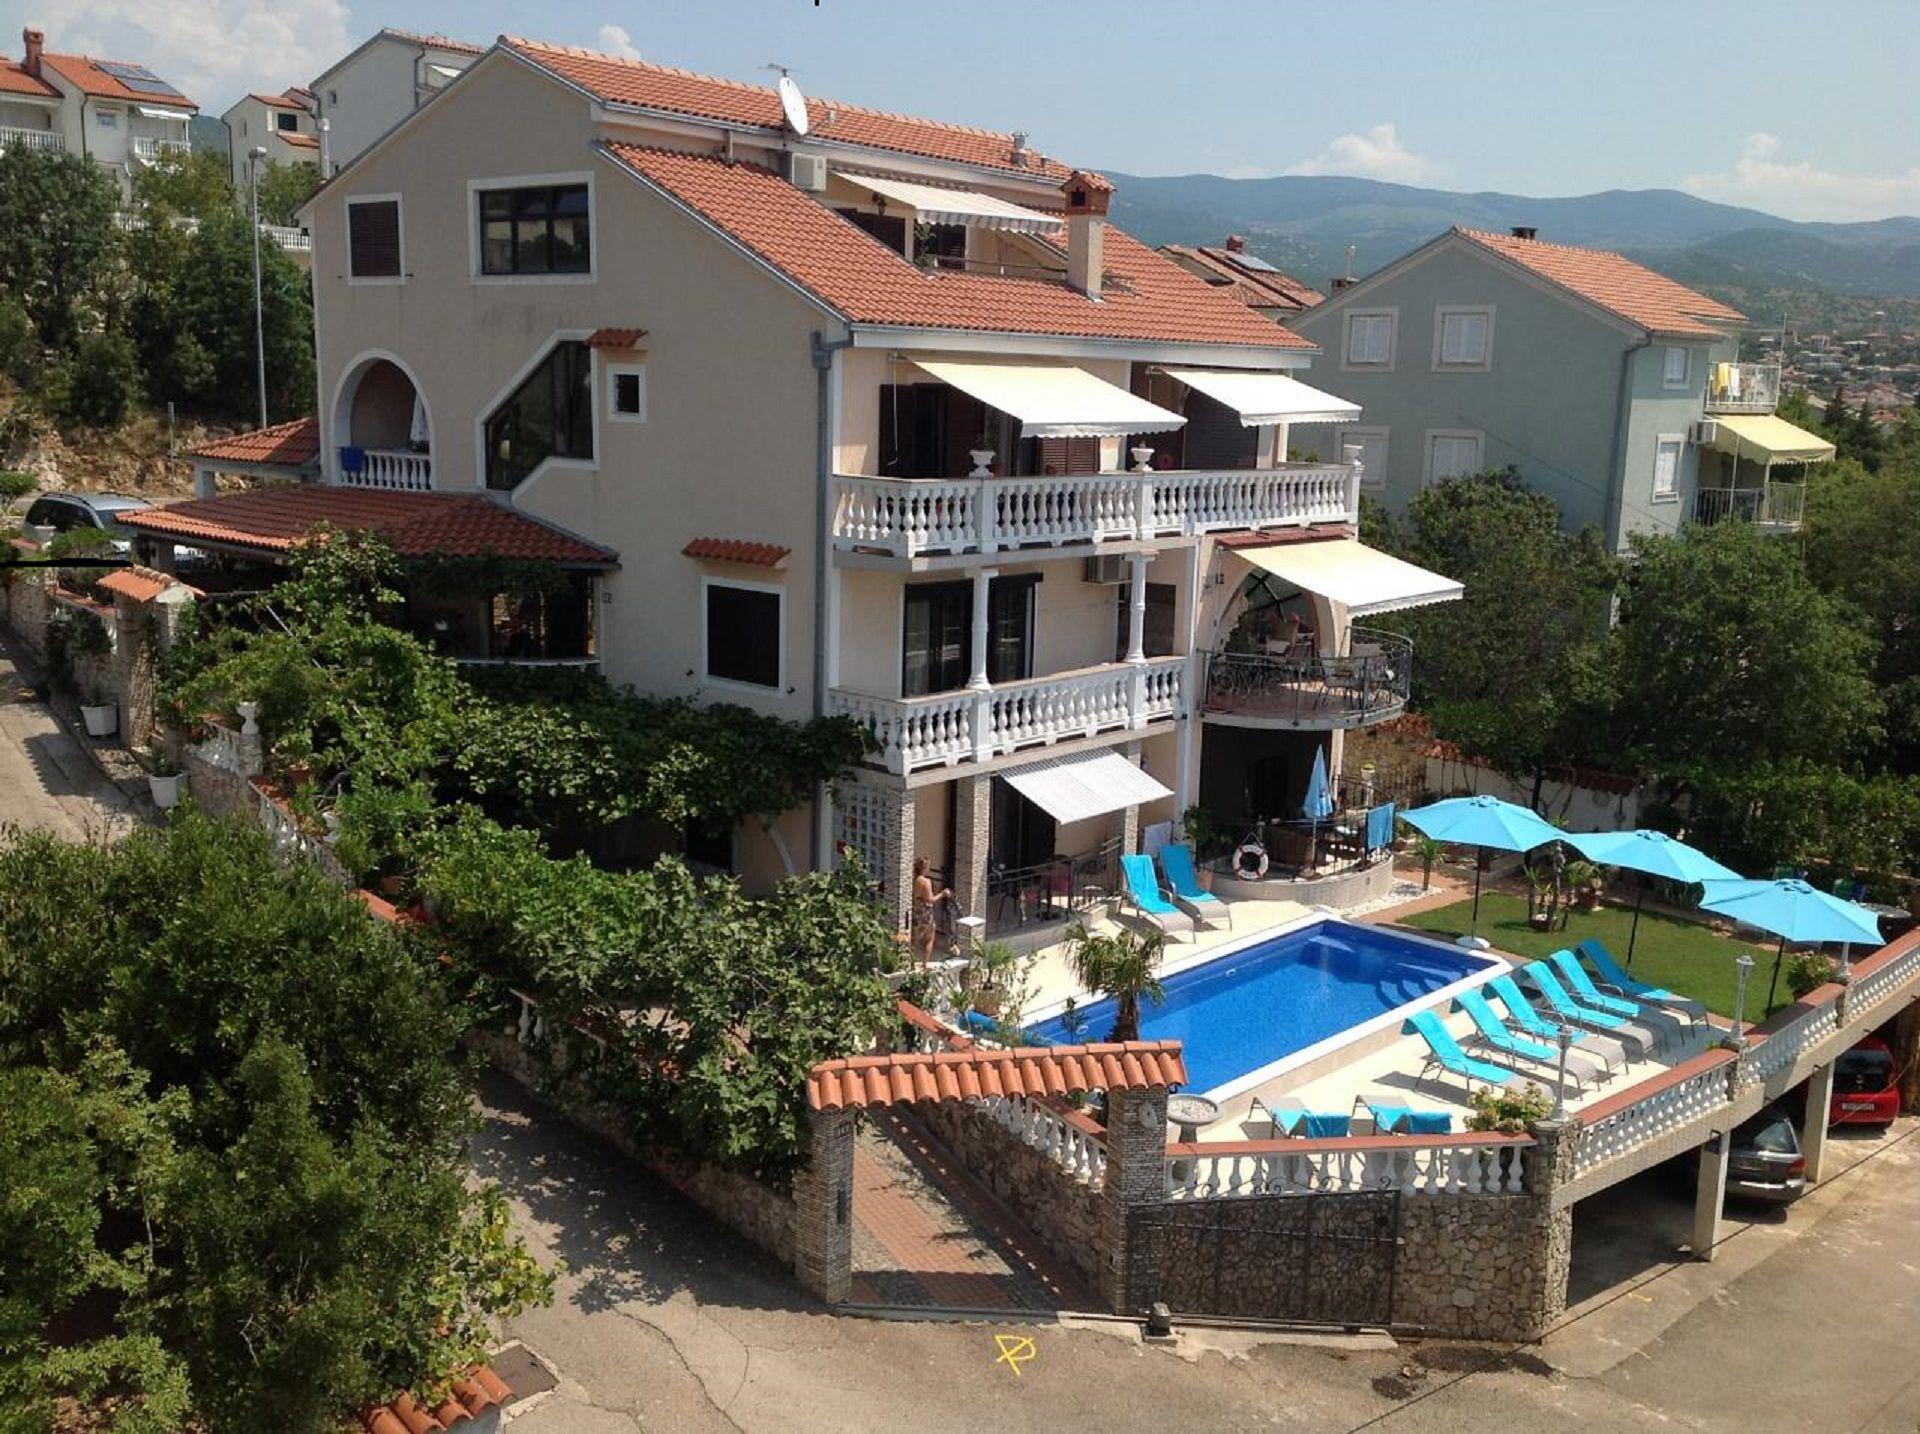 Wohnung in Novi Vinodolski mit Grill, gemeinsamem  Ferienhaus in Kroatien